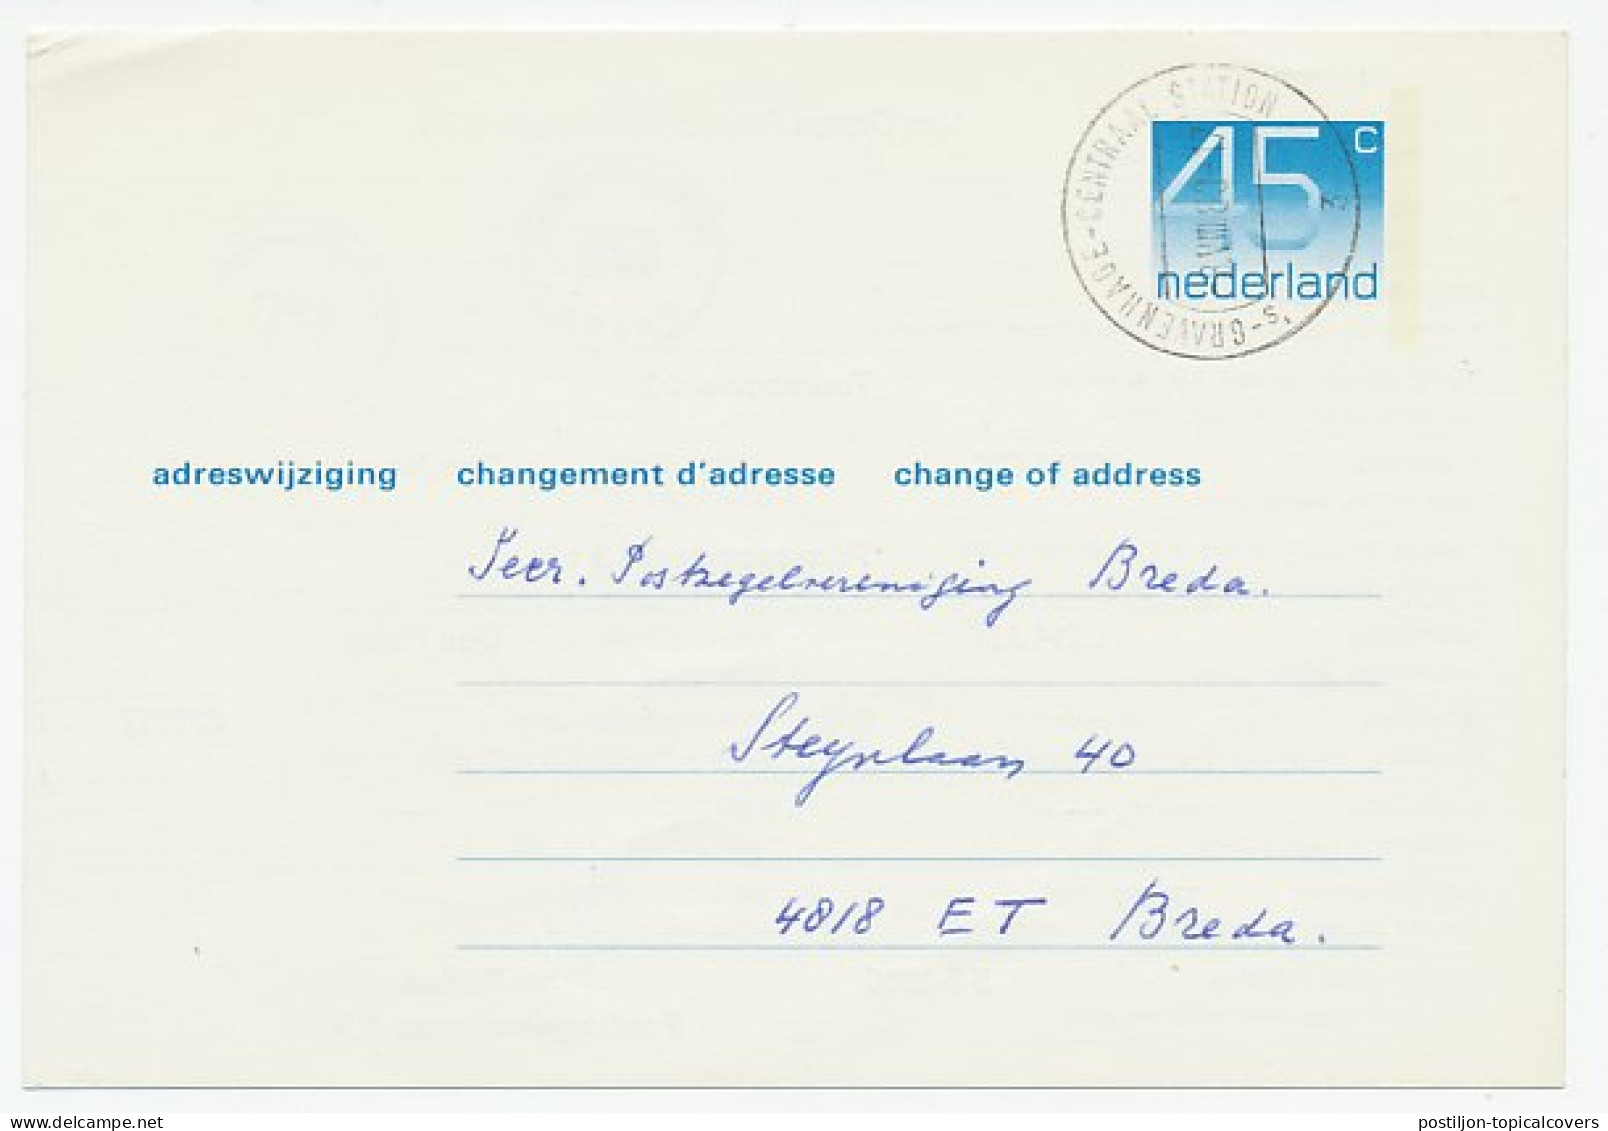 Verhuiskaart G. 46 Particulier Bedrukt Den Haag 1980 - Interi Postali